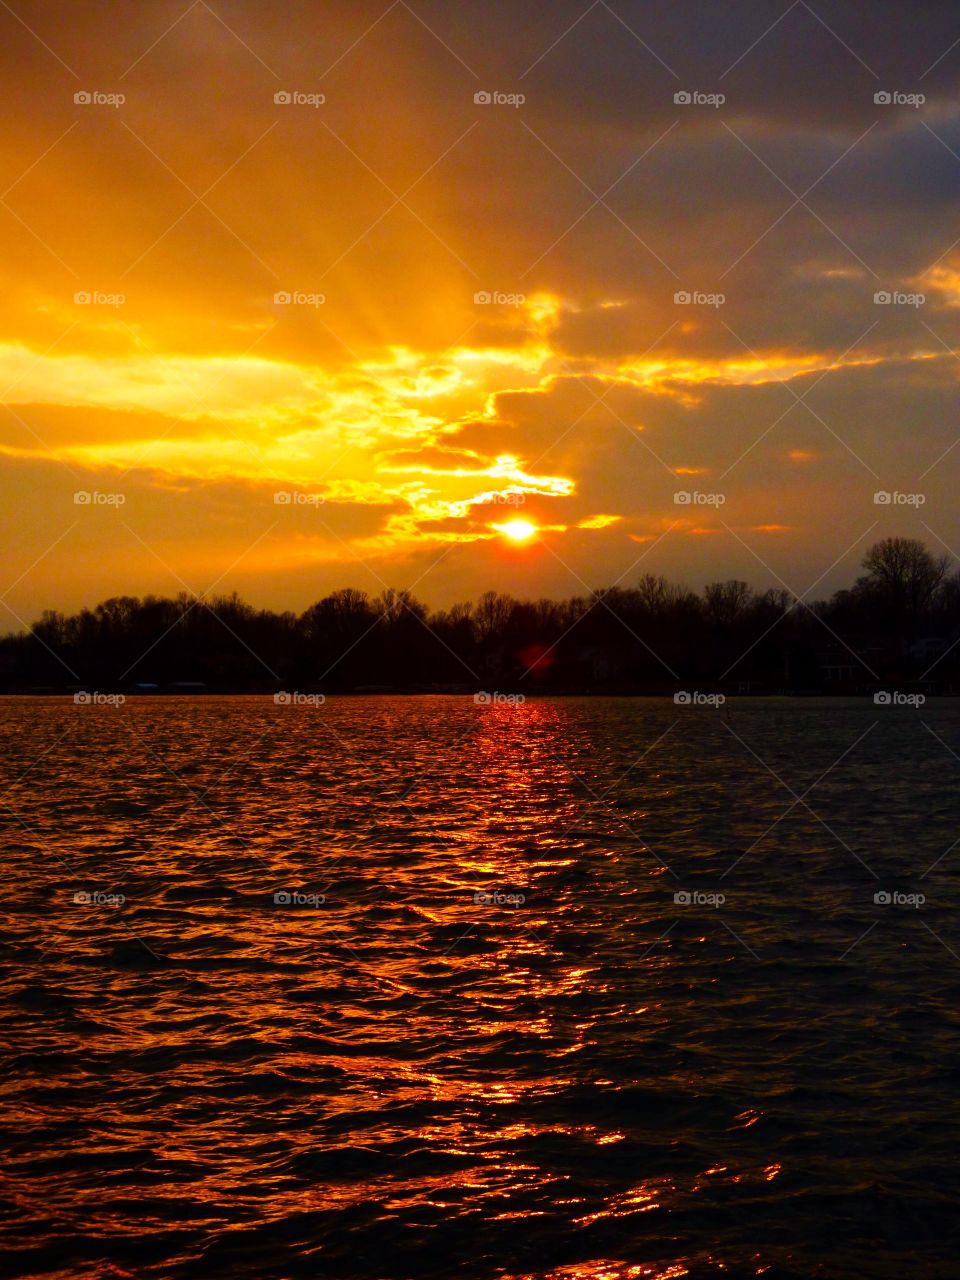 Lake sunset views